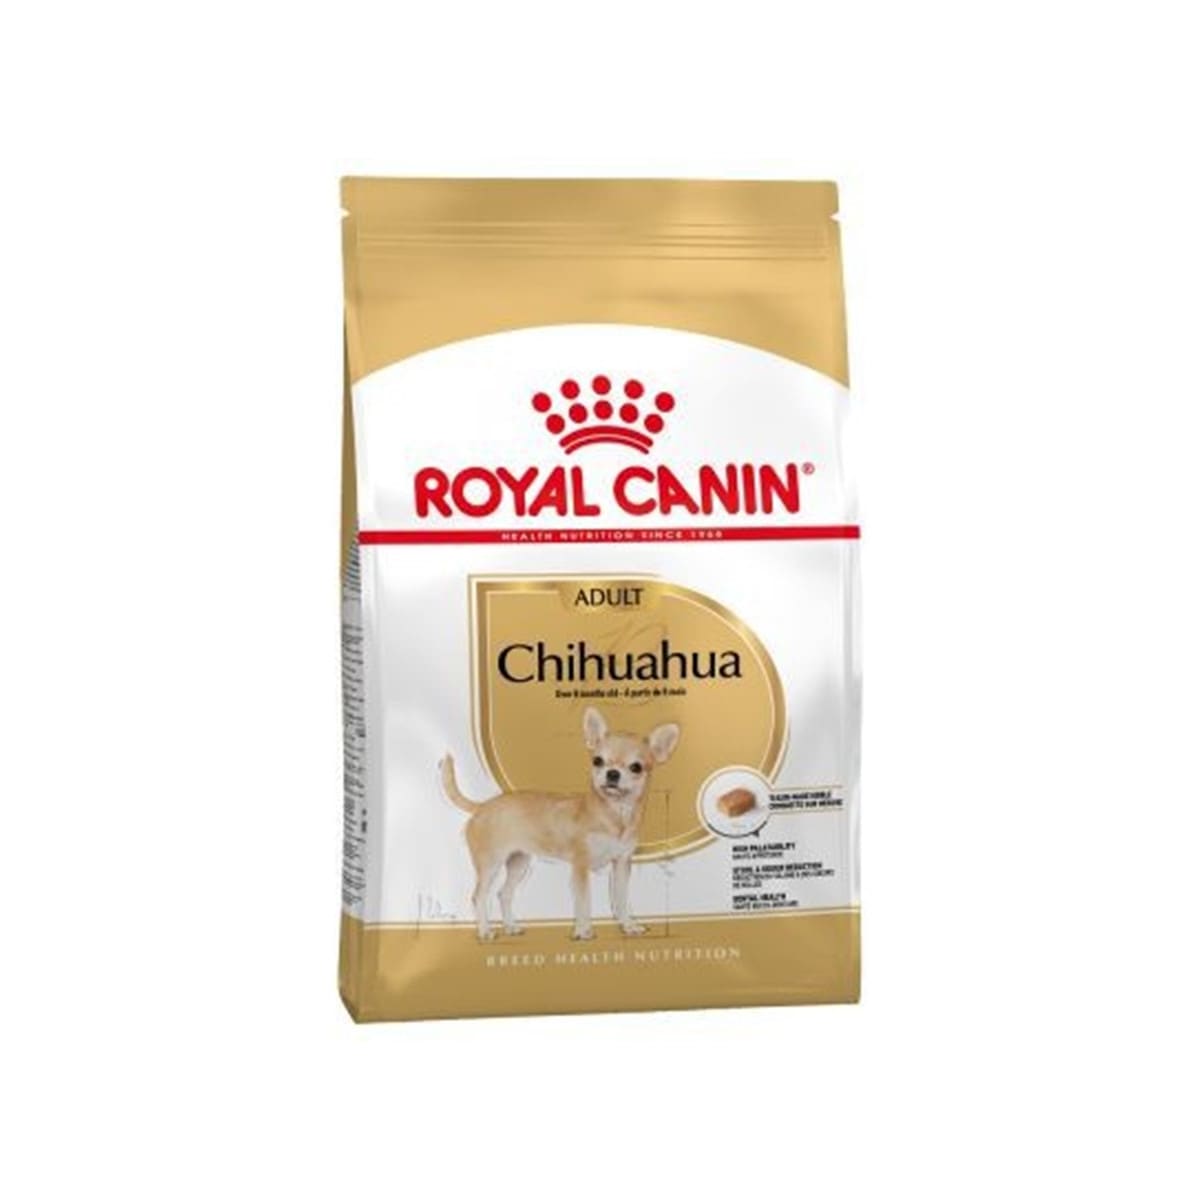 Royal Canin โรยัล คานิน อาหารสุนัขแบบเม็ด สำหรับสุนัขโตสายพันธุ์ชิวาวา